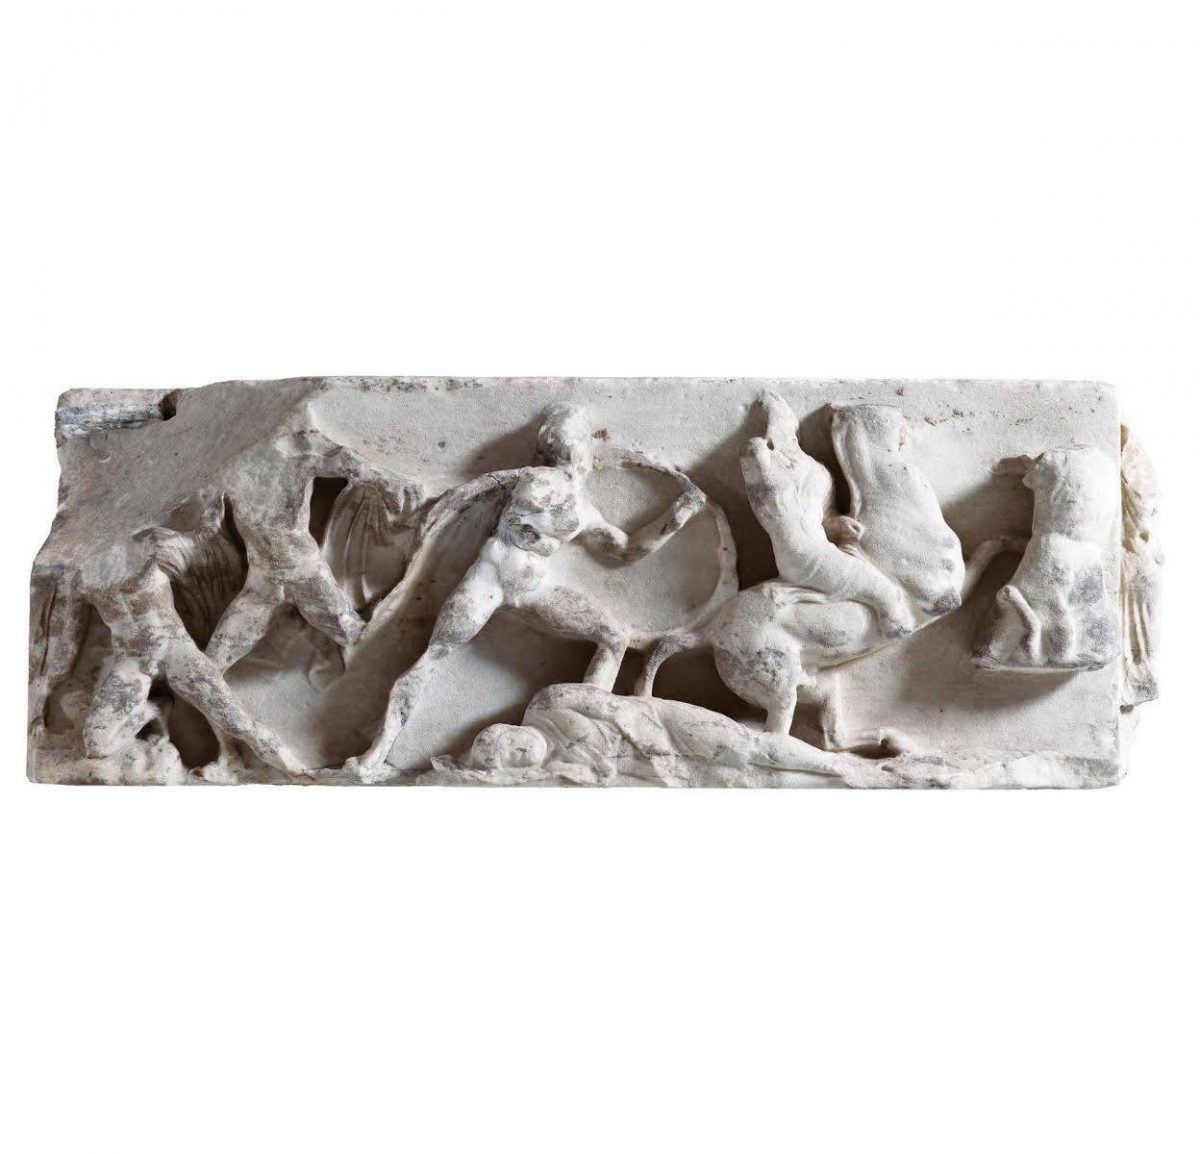 Η Μάχη του Μαραθώνα, όπως απεικονίζεται στη νότια ζωφόρο του ναού της Αθηνάς Νίκης στην Ακρόπολη της Αθήνας (Πλάκα Α, Harrison - Μουσείο Ακρόπολης, φωτ.: Σωκράτης Μαυρομμάτης). Ελαφρά οπλισμένοι Αθηναίοι πολίτες/στρατιώτες και οπλίτες εξοντώνουν το περσικό ιππικό.